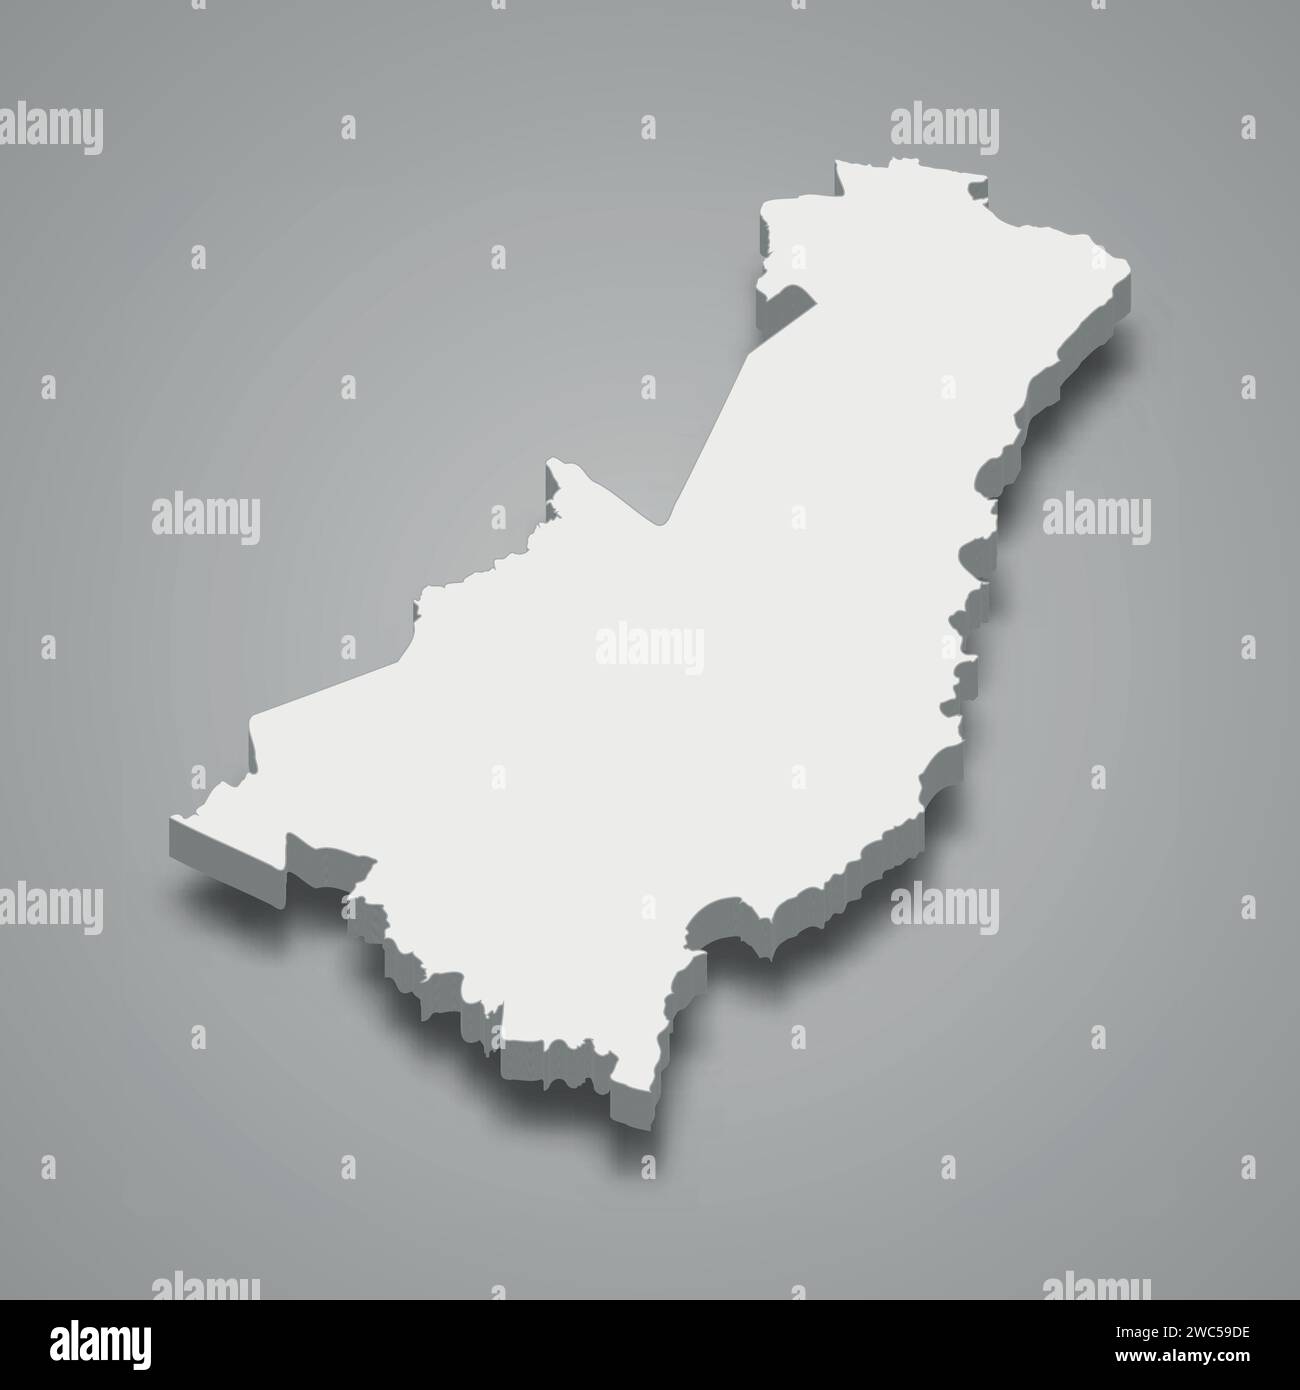 La mappa isometrica 3d di Gisborne è una regione della nuova Zelanda, con illustrazione vettoriale Illustrazione Vettoriale